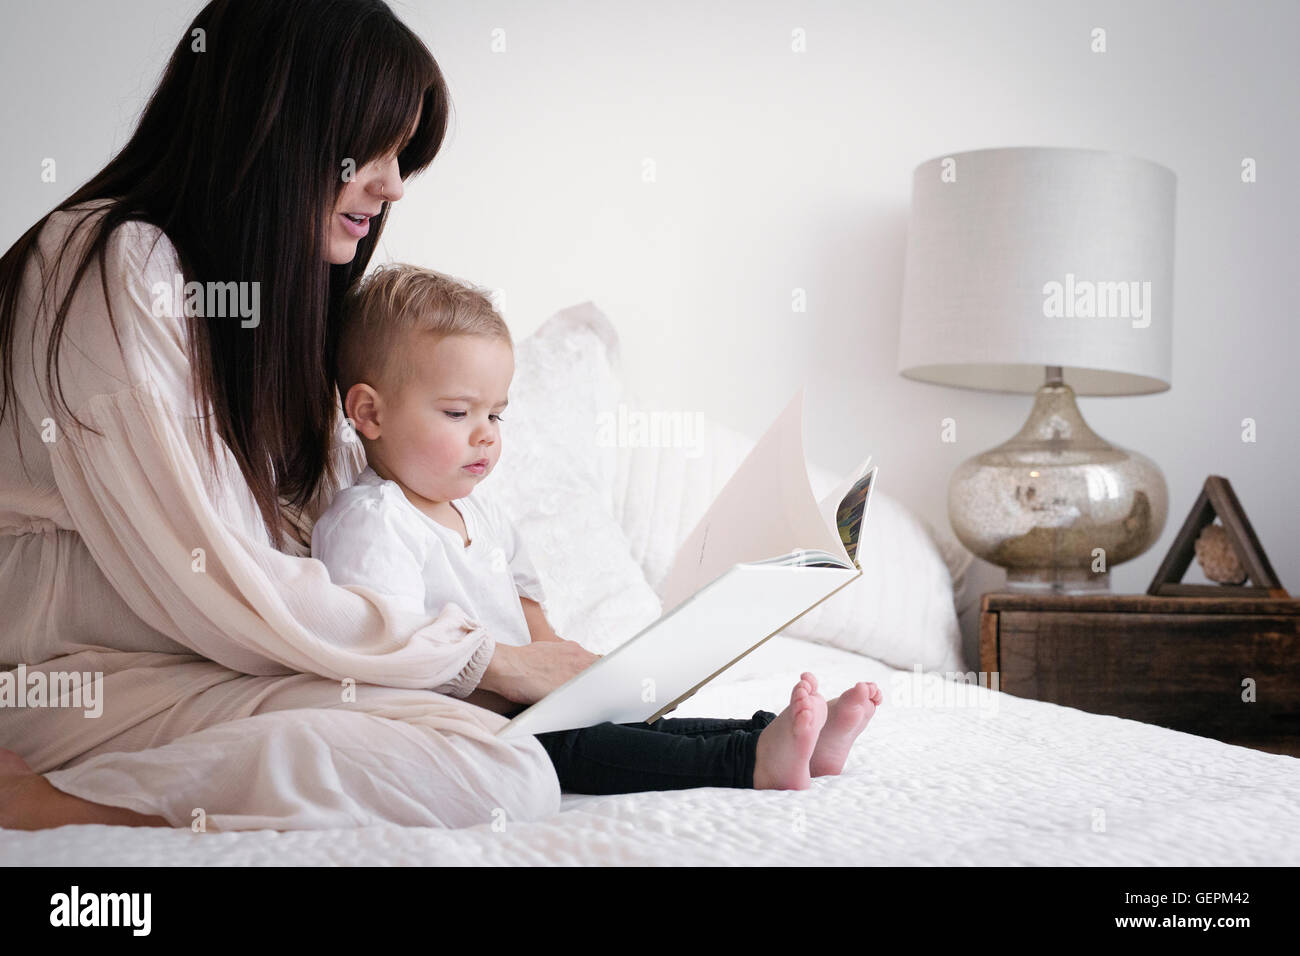 Eine hochschwangere Frau spielt mit ihrem kleinen Sohn. Sitzen auf einem Bett, eine Geschichte zu lesen. Stockfoto